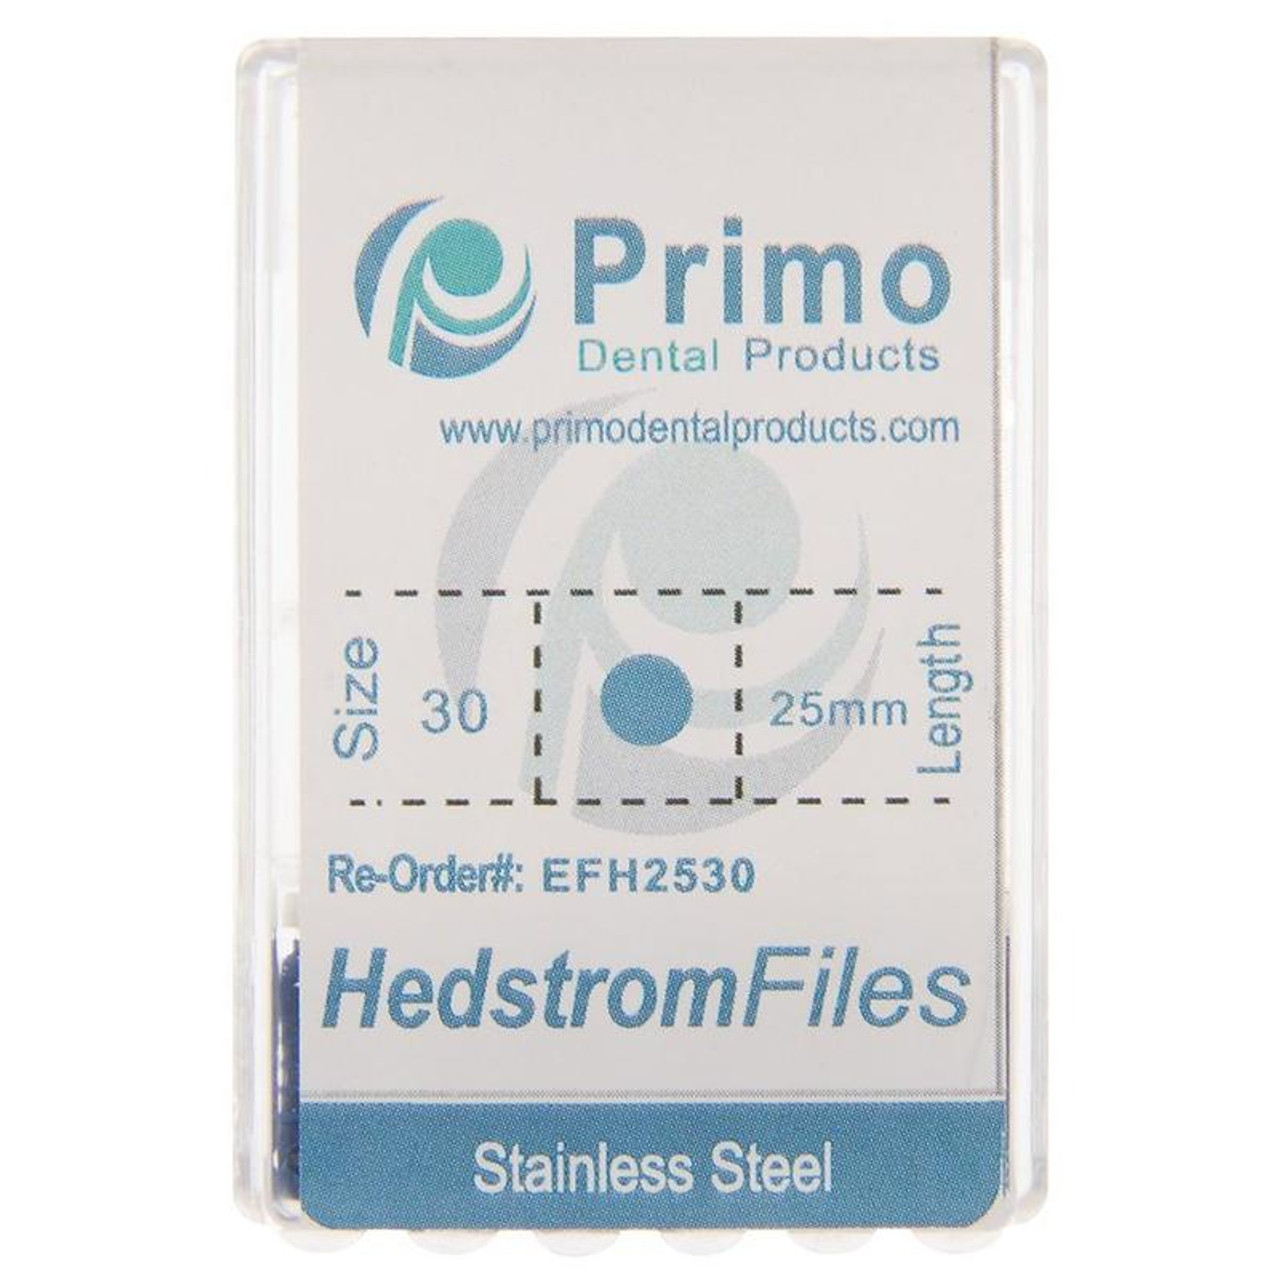 Hedstrom File 21mm #10, Primo Dental, EFH2110